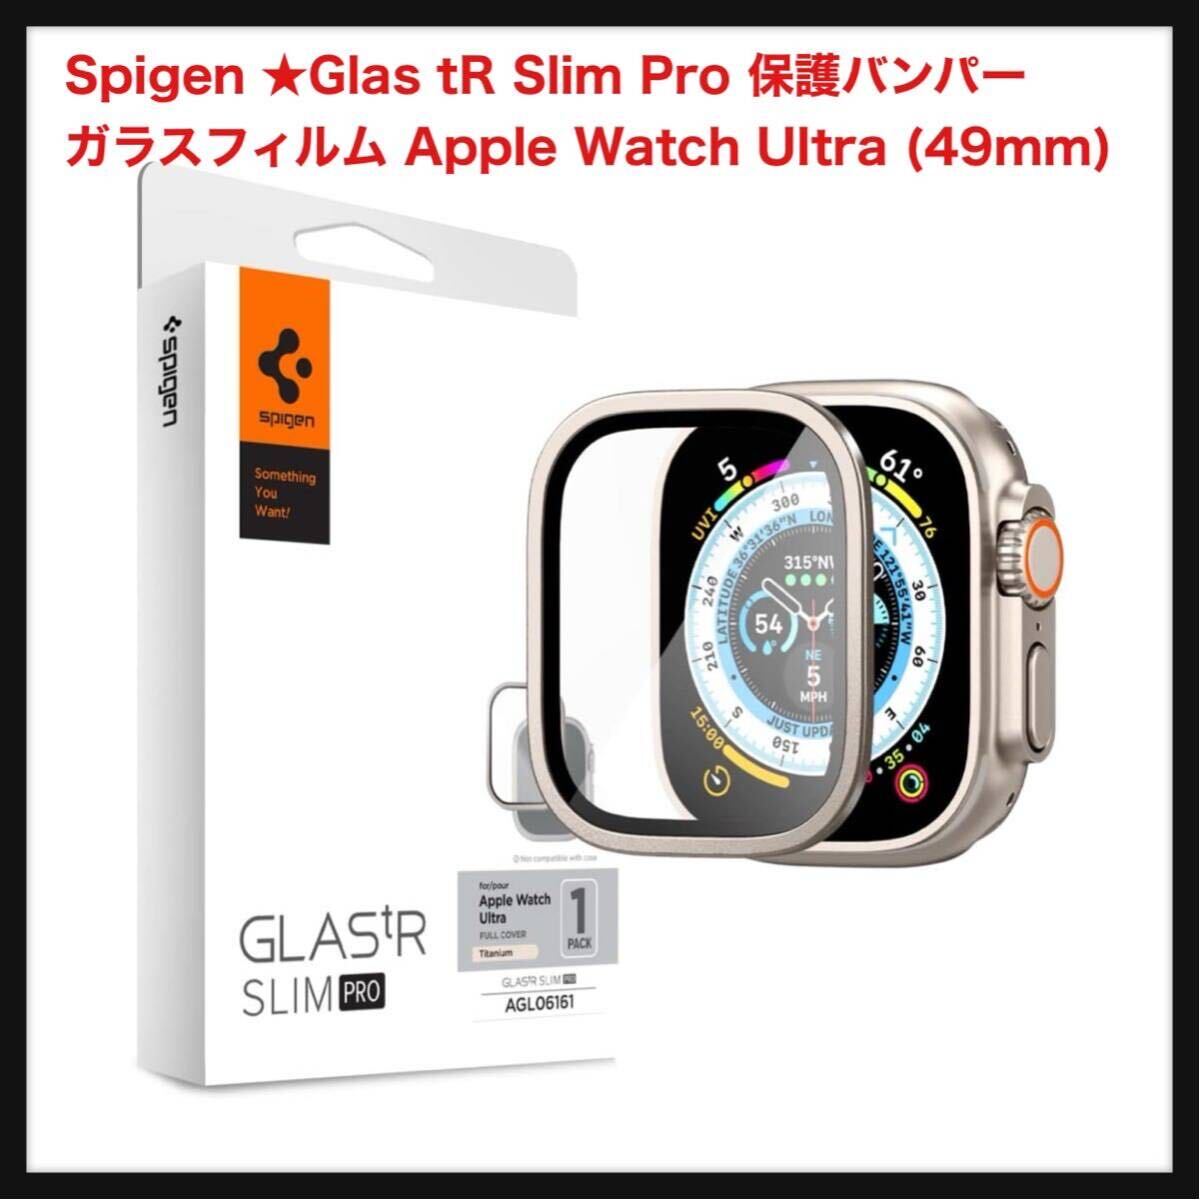 【開封のみ】Spigen ★Glas tR Slim Pro 保護バンパー ガラスフィルム Apple Watch Ultra (49mm) / Apple Watch Ultra 2 チタニウム の画像1